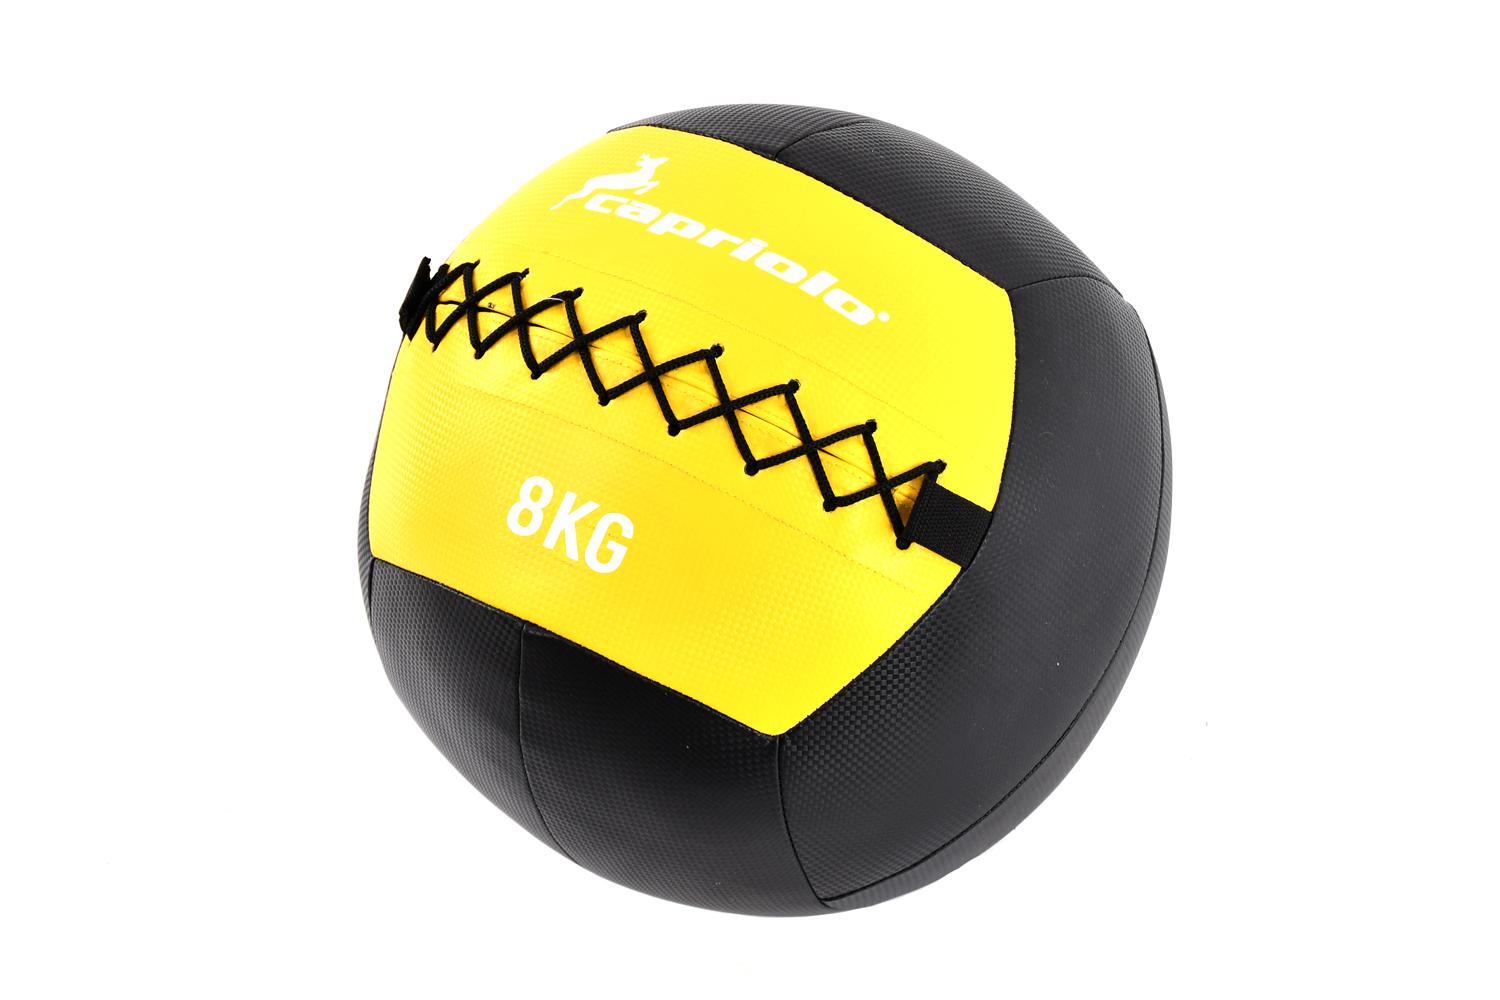 Capriolo Wall Ball Lopta za bacanje, 8kg, Crno-žuta